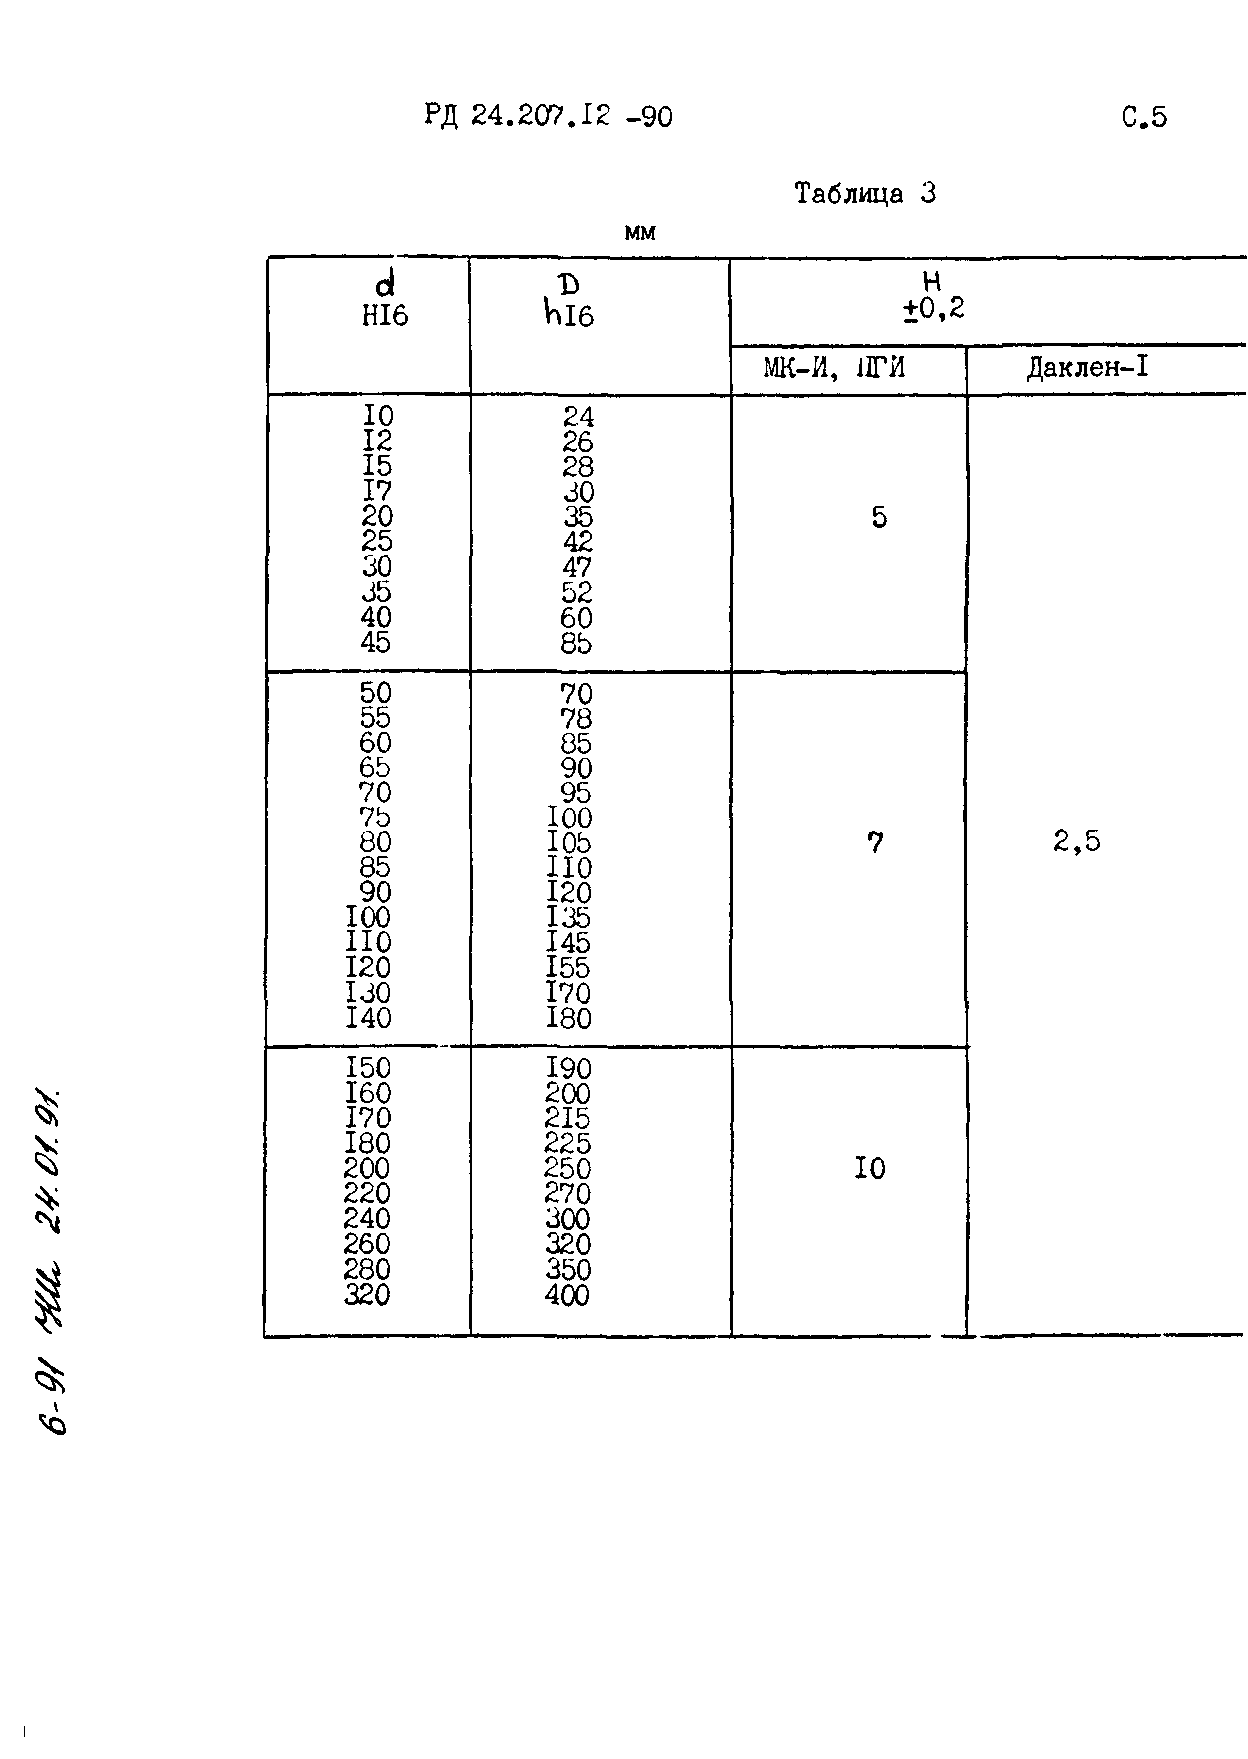 РД 24.207.12-90